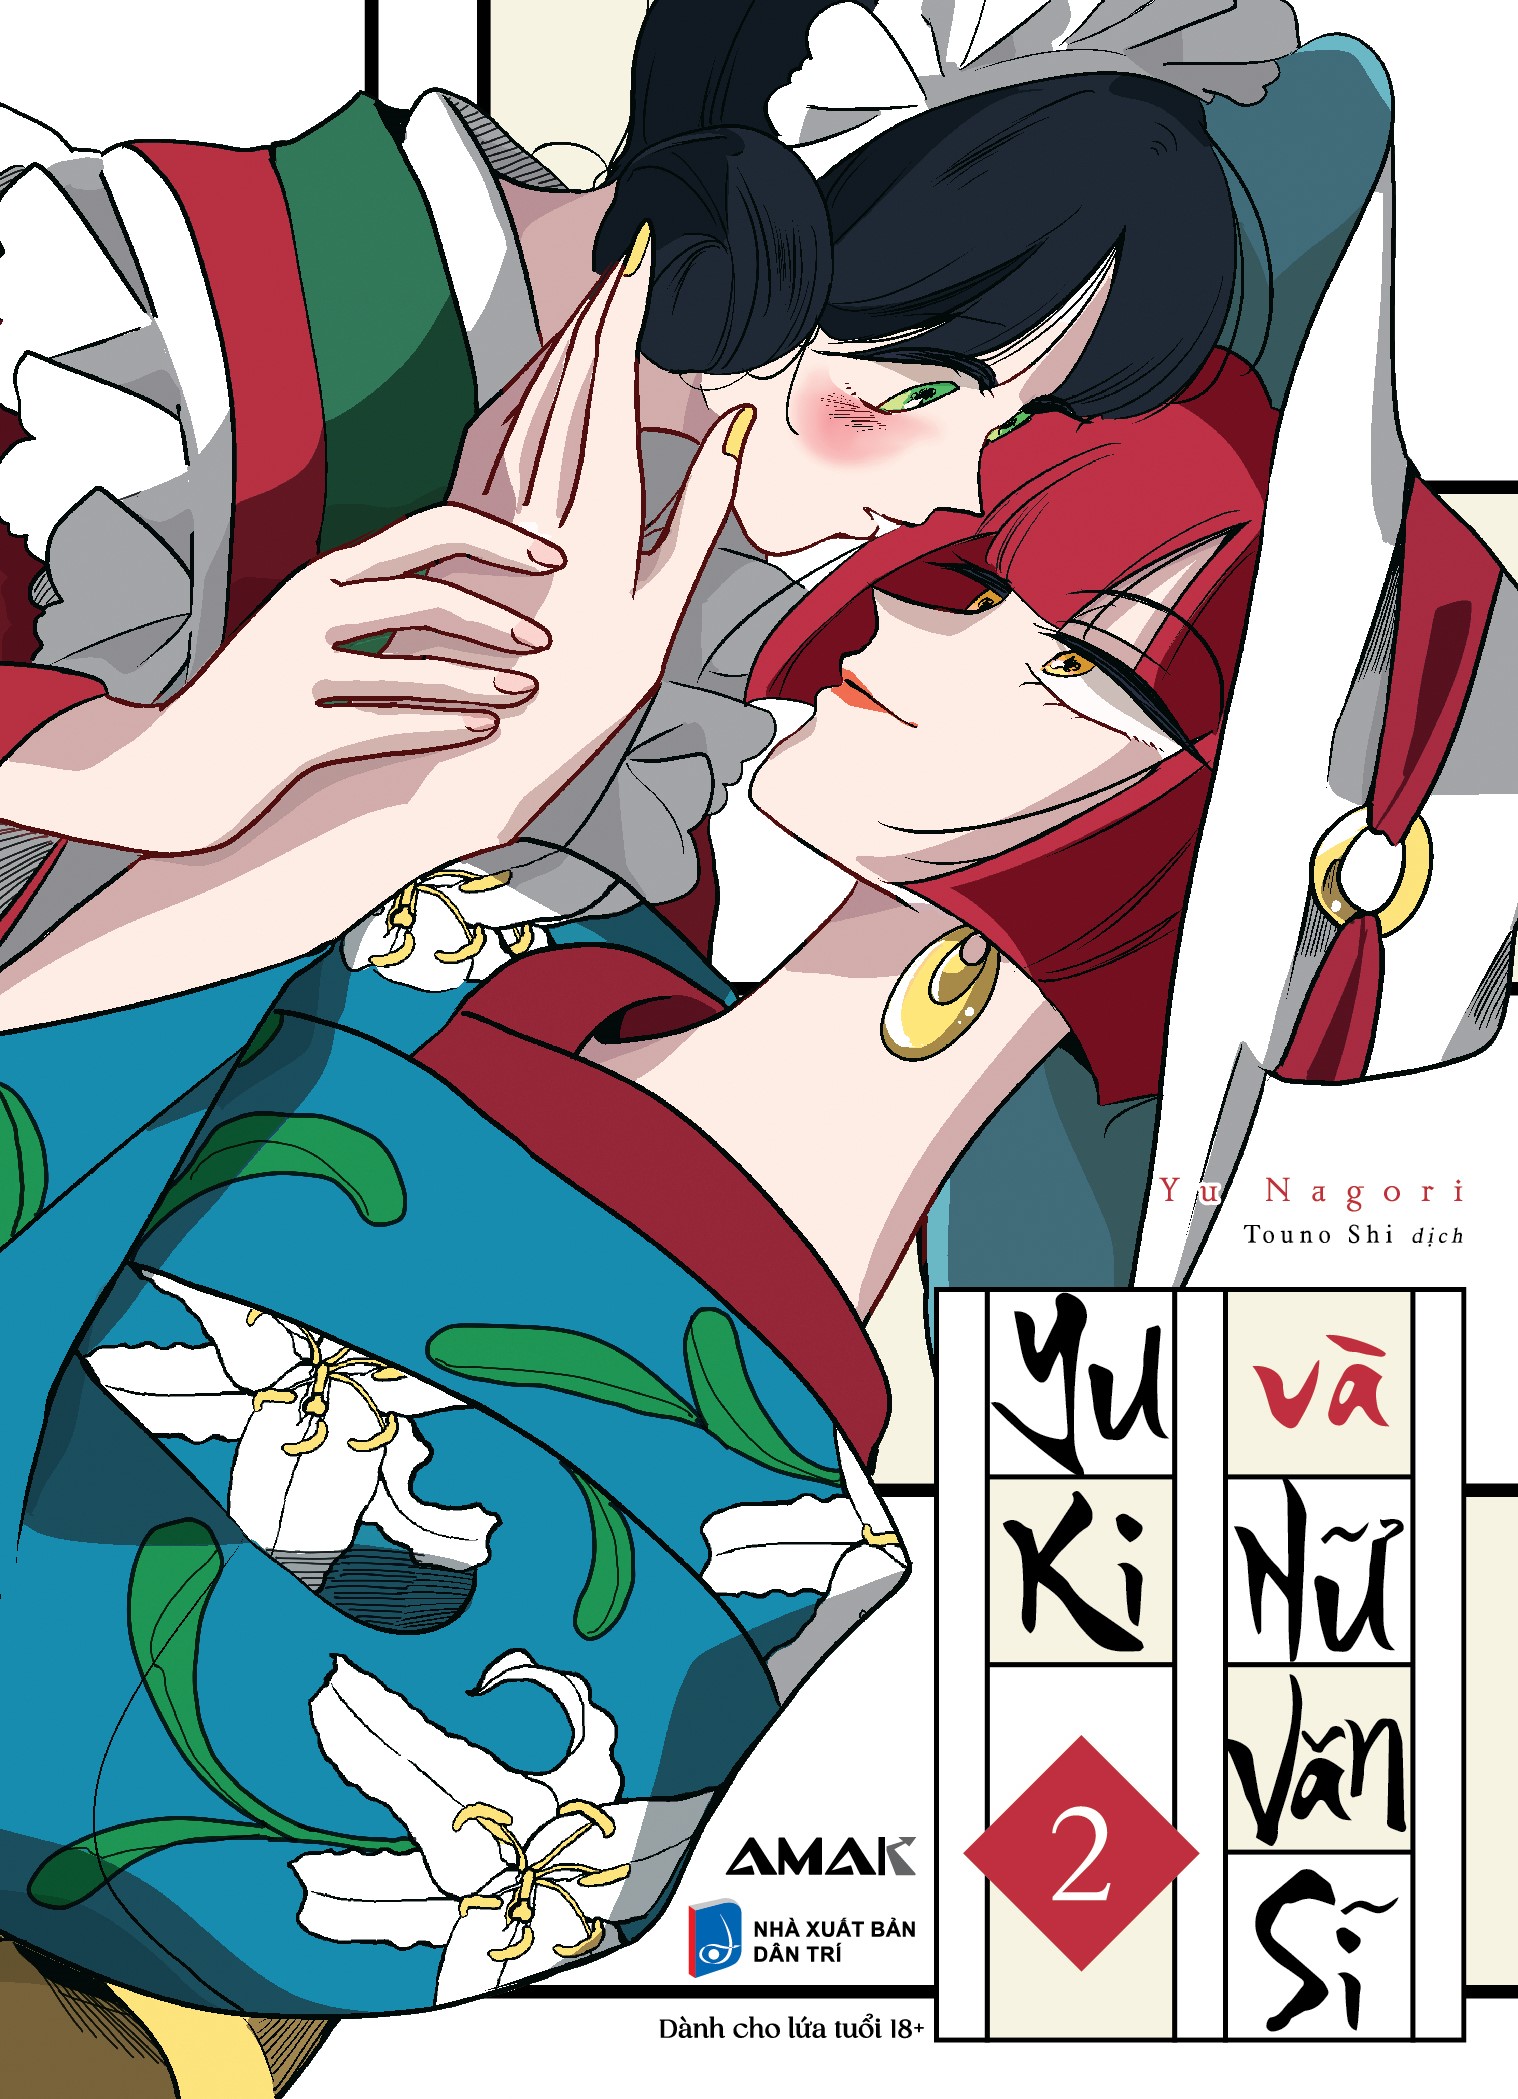 [Manga] Yuki và Nữ Văn Sĩ - Combo 2 tập - Amakbooks